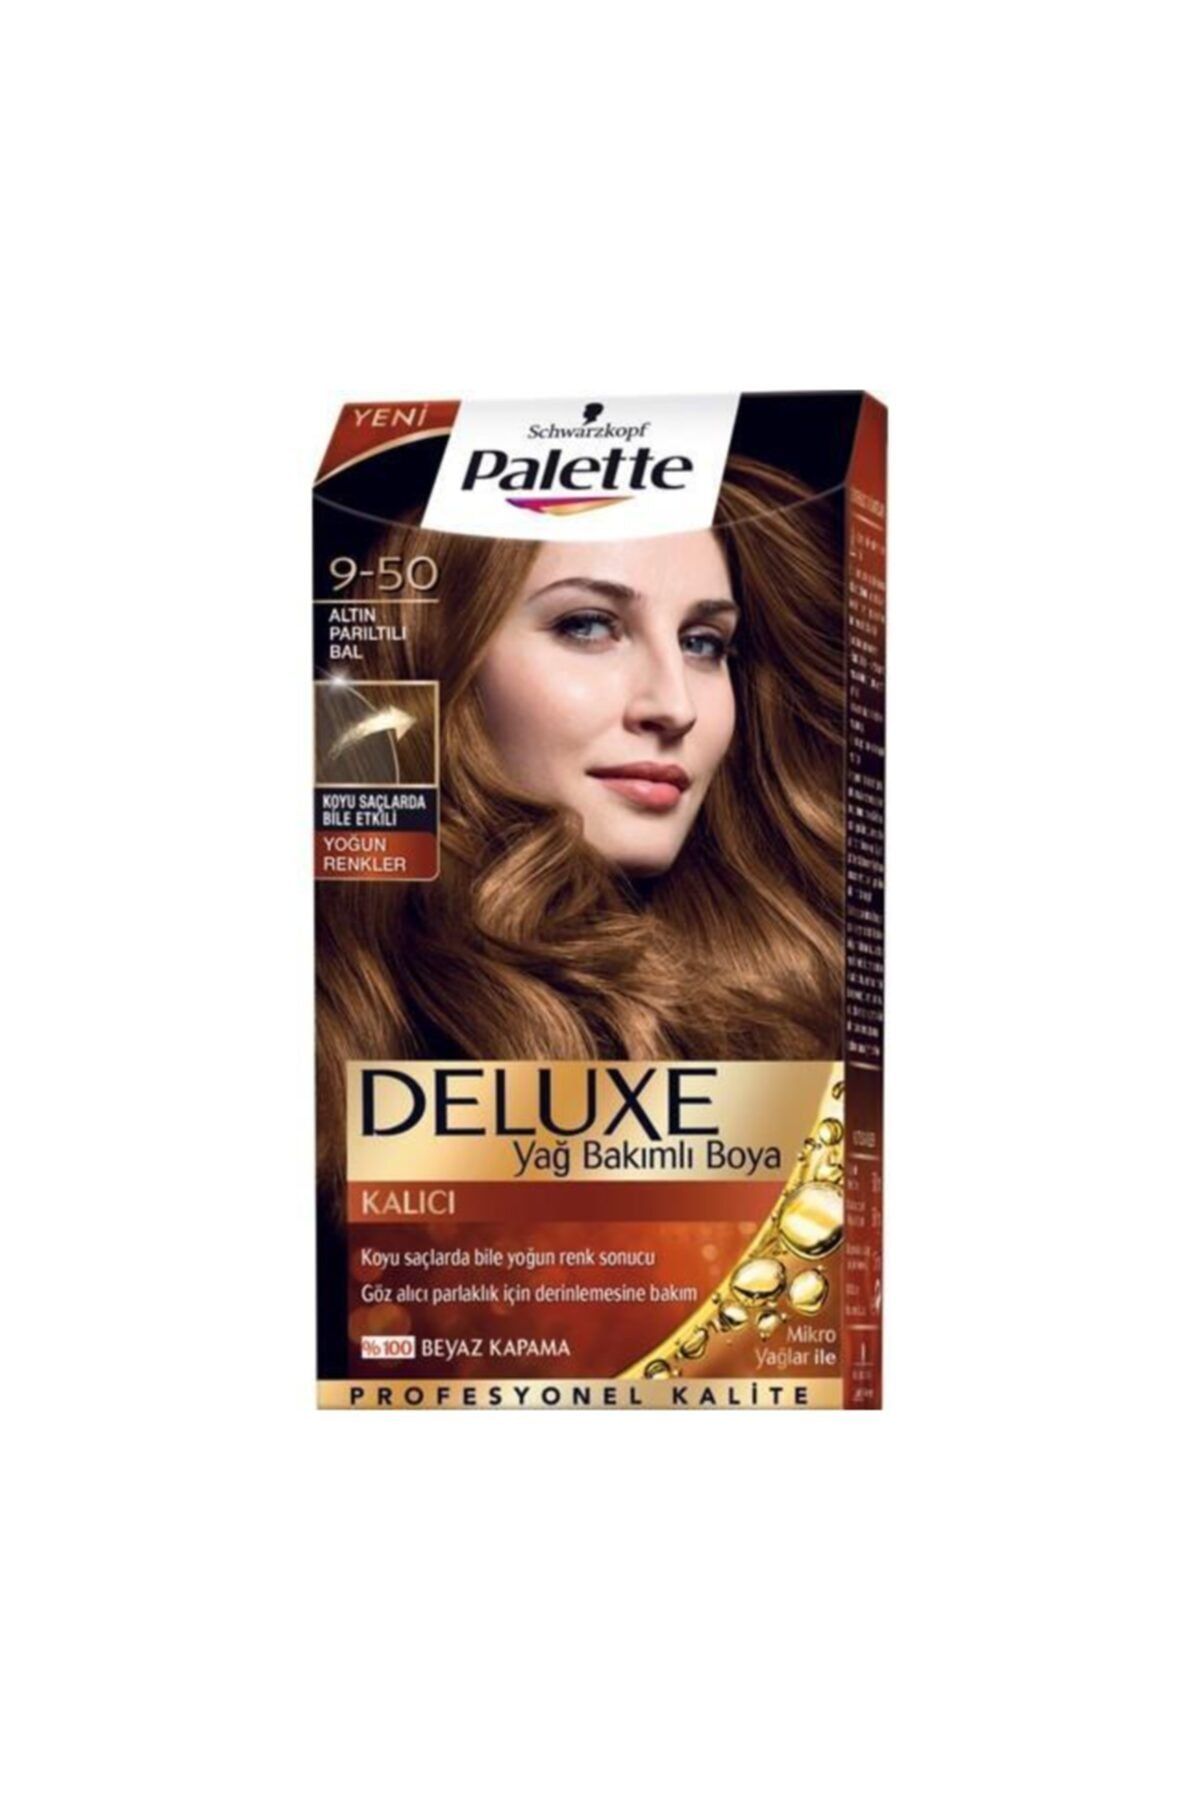 Palette Saç Boyası Deluxe Yoğun Renkler 9-50 Altın Parıltılı Bal